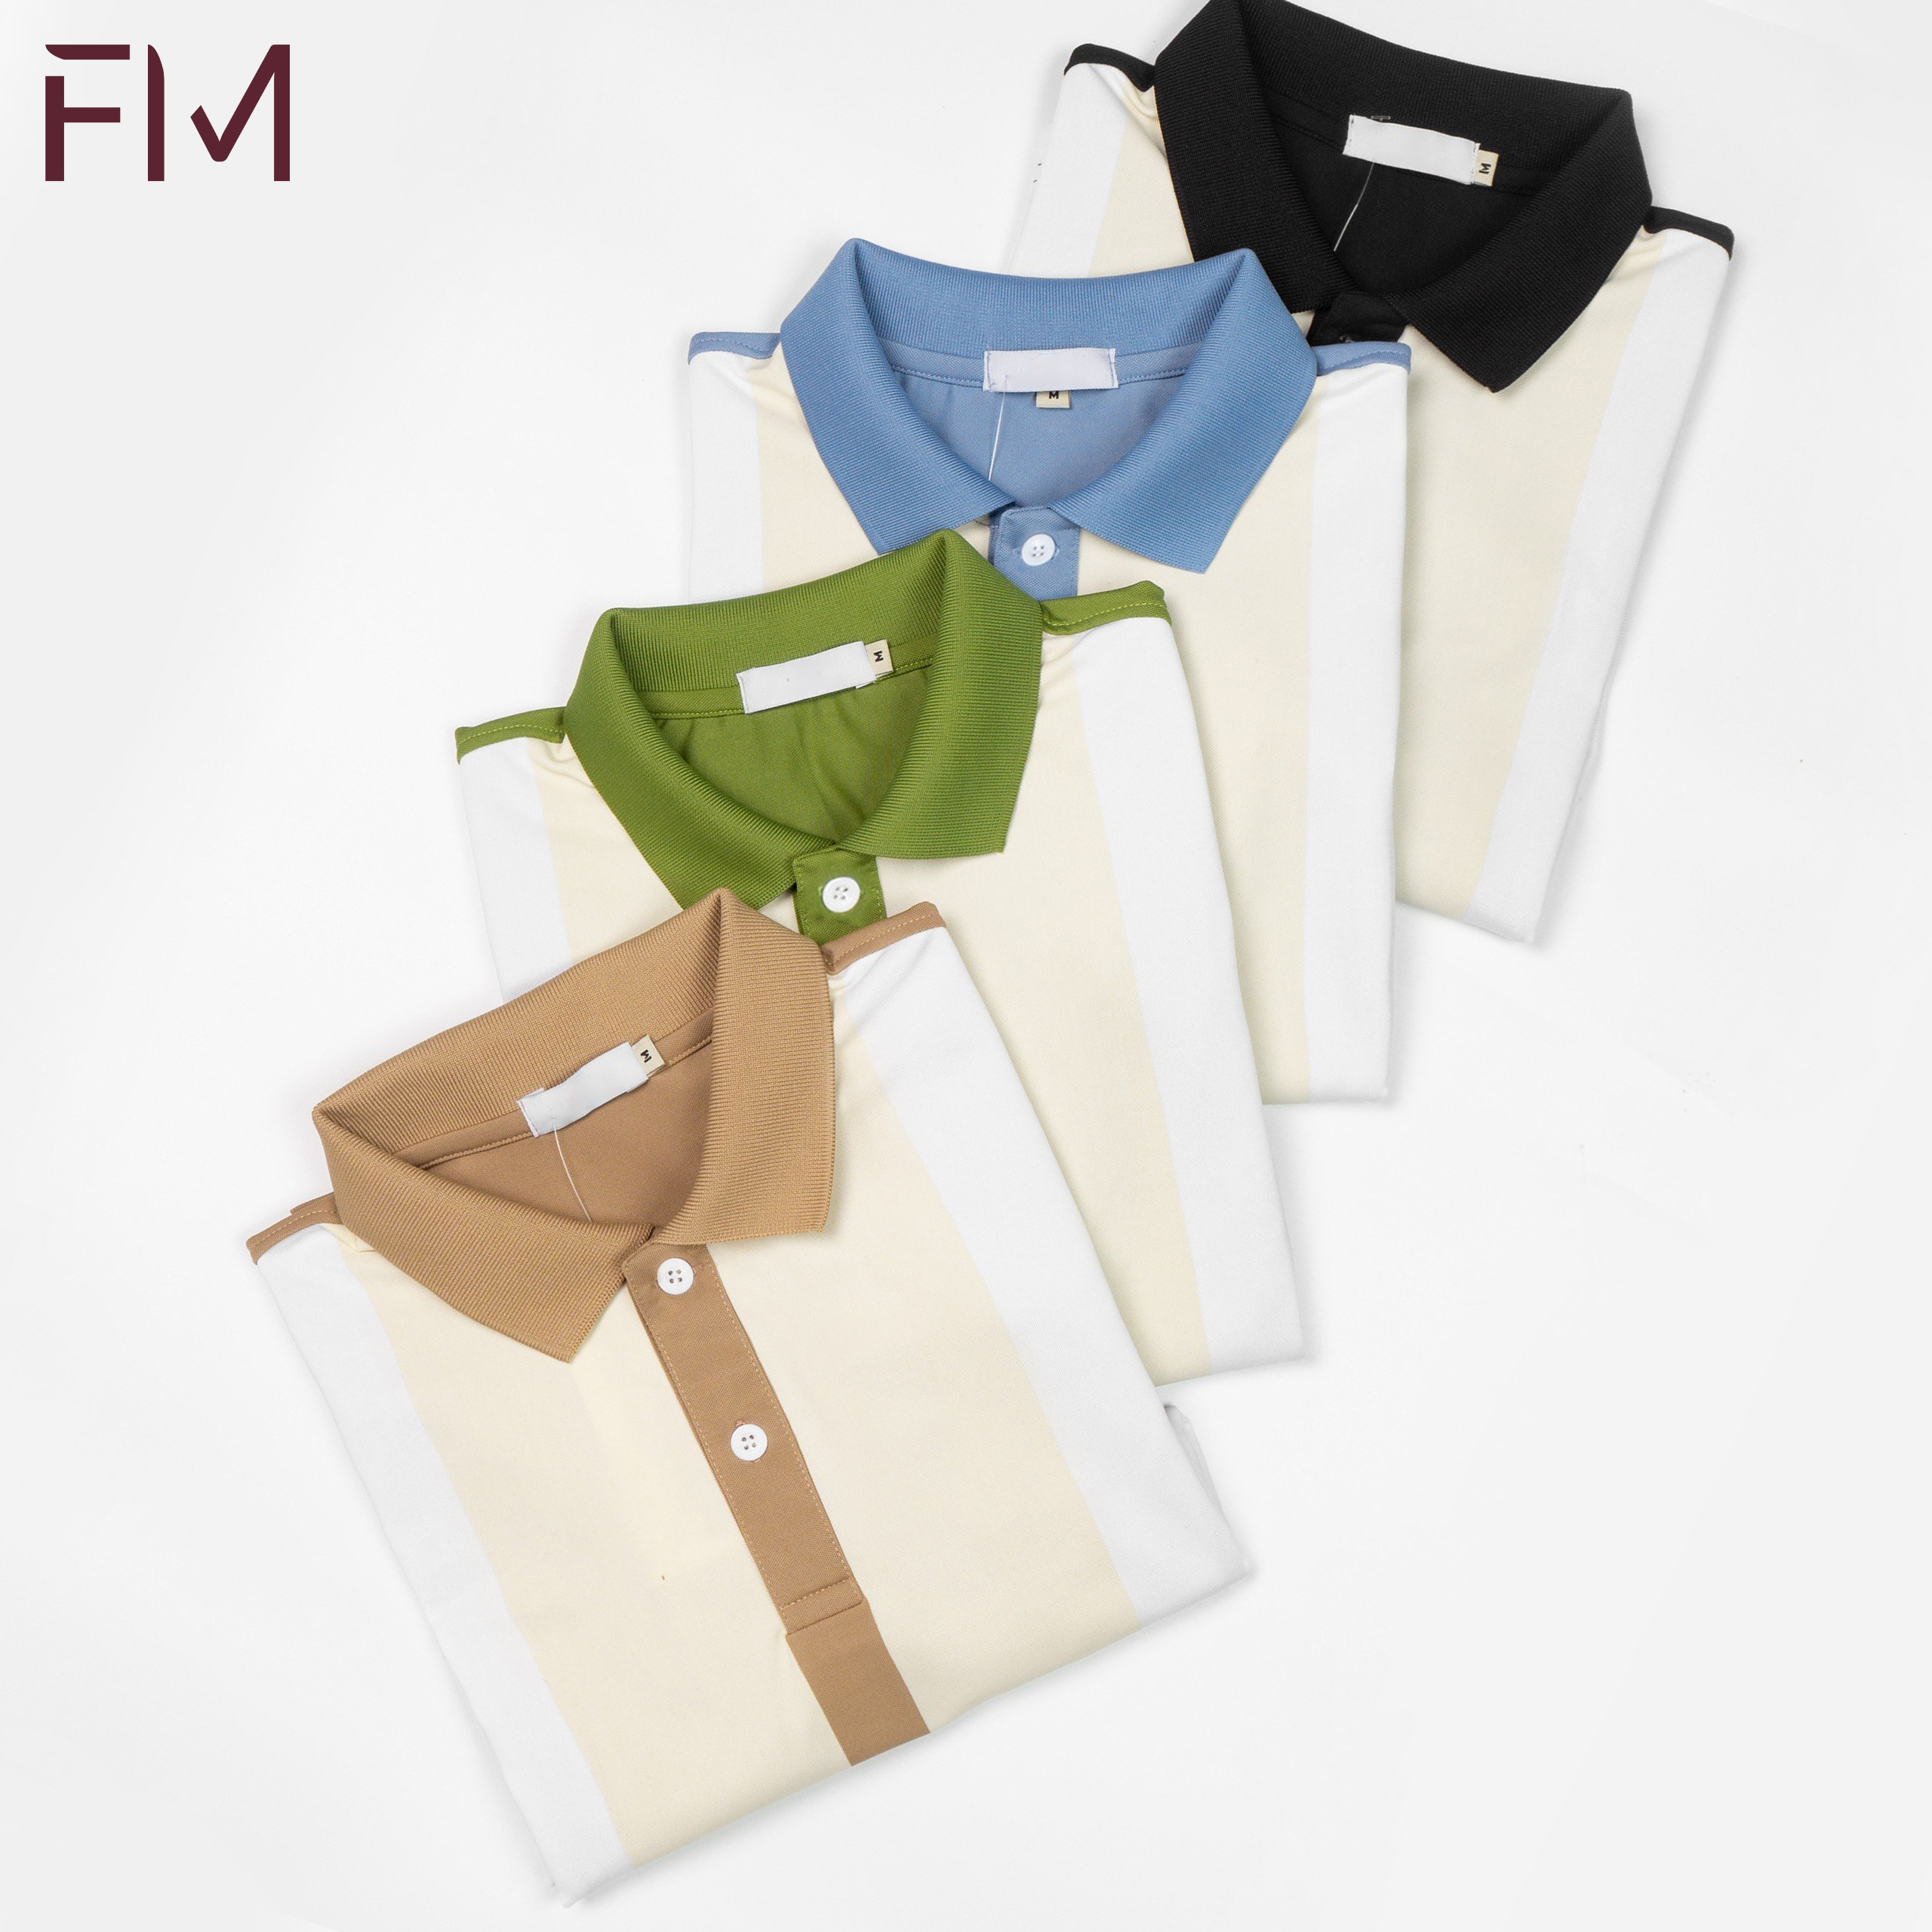 Áo polo thời trang nam, áo thun có cổ, thiết kế kiểu dáng trendy, dễ dàng phối đồ - FORMEN SHOP - FMPS202